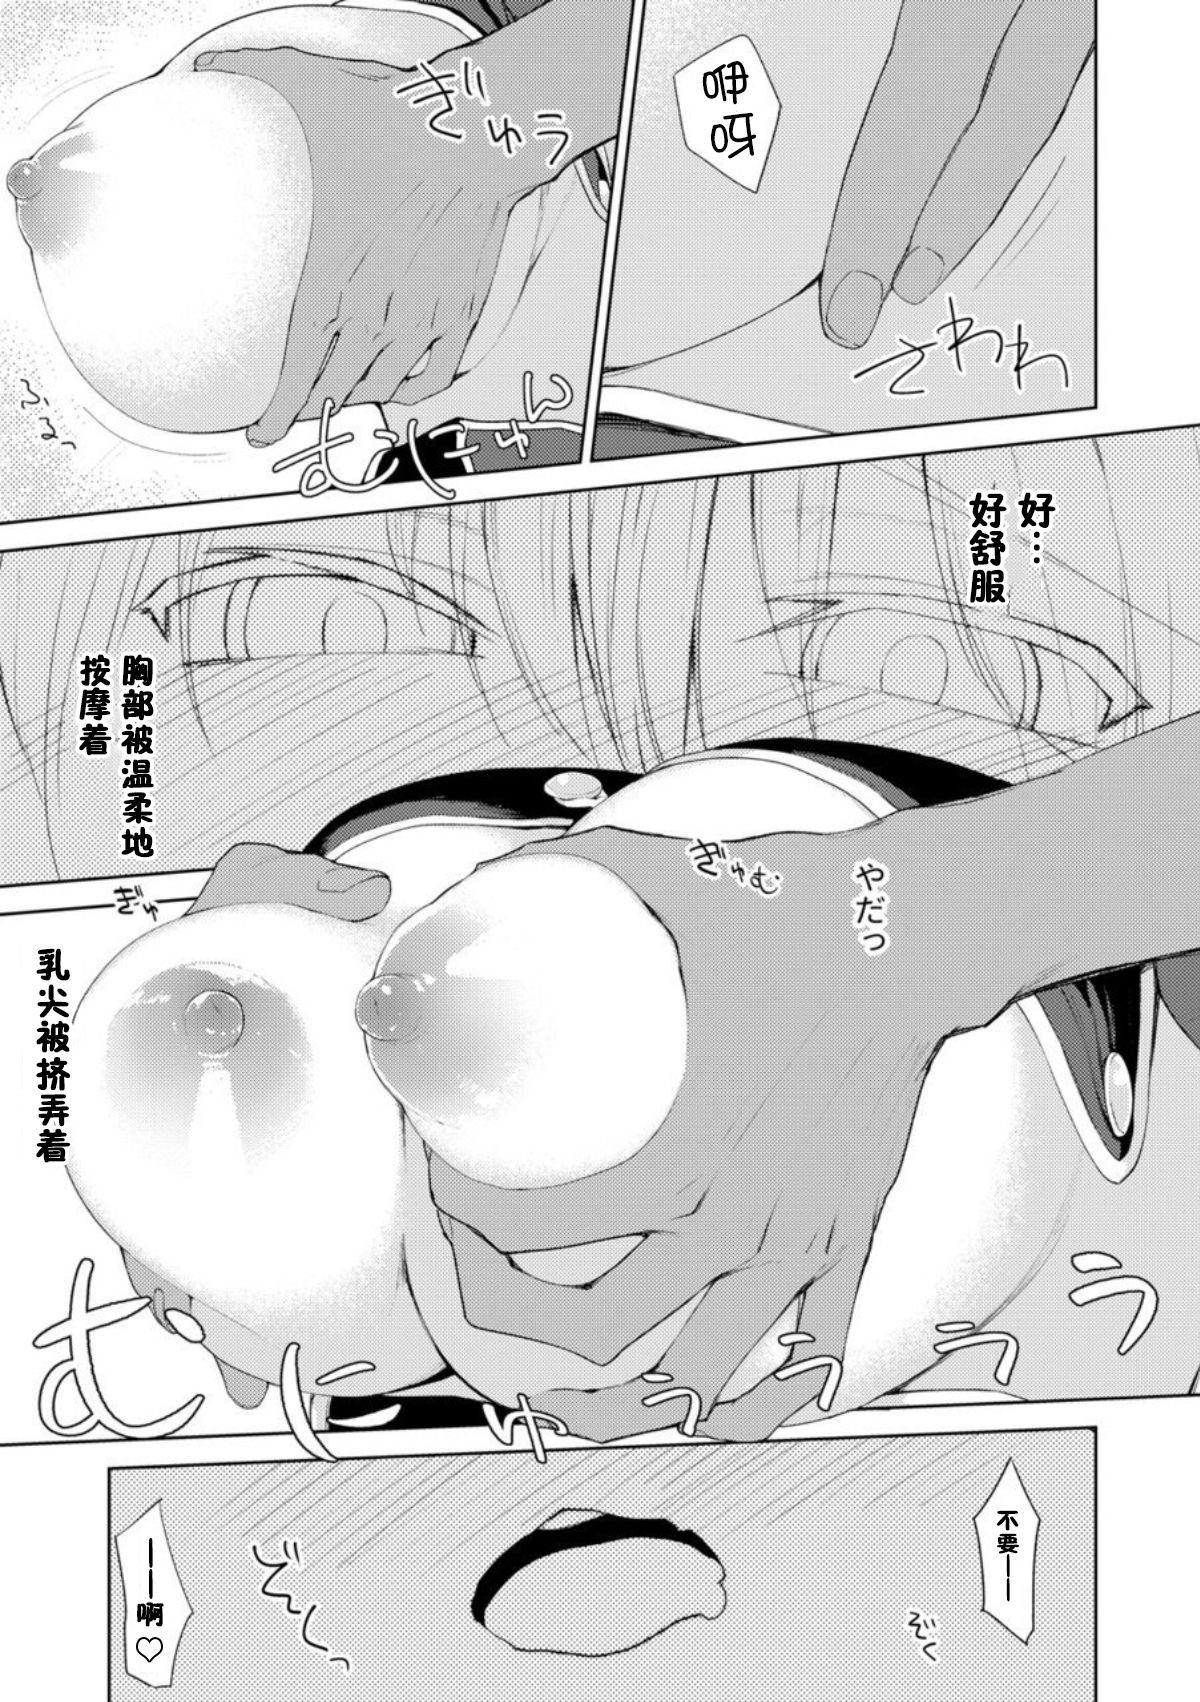 Muscle Persis vs Oppai Seijin - Sennen sensou aigis Young Men - Page 10